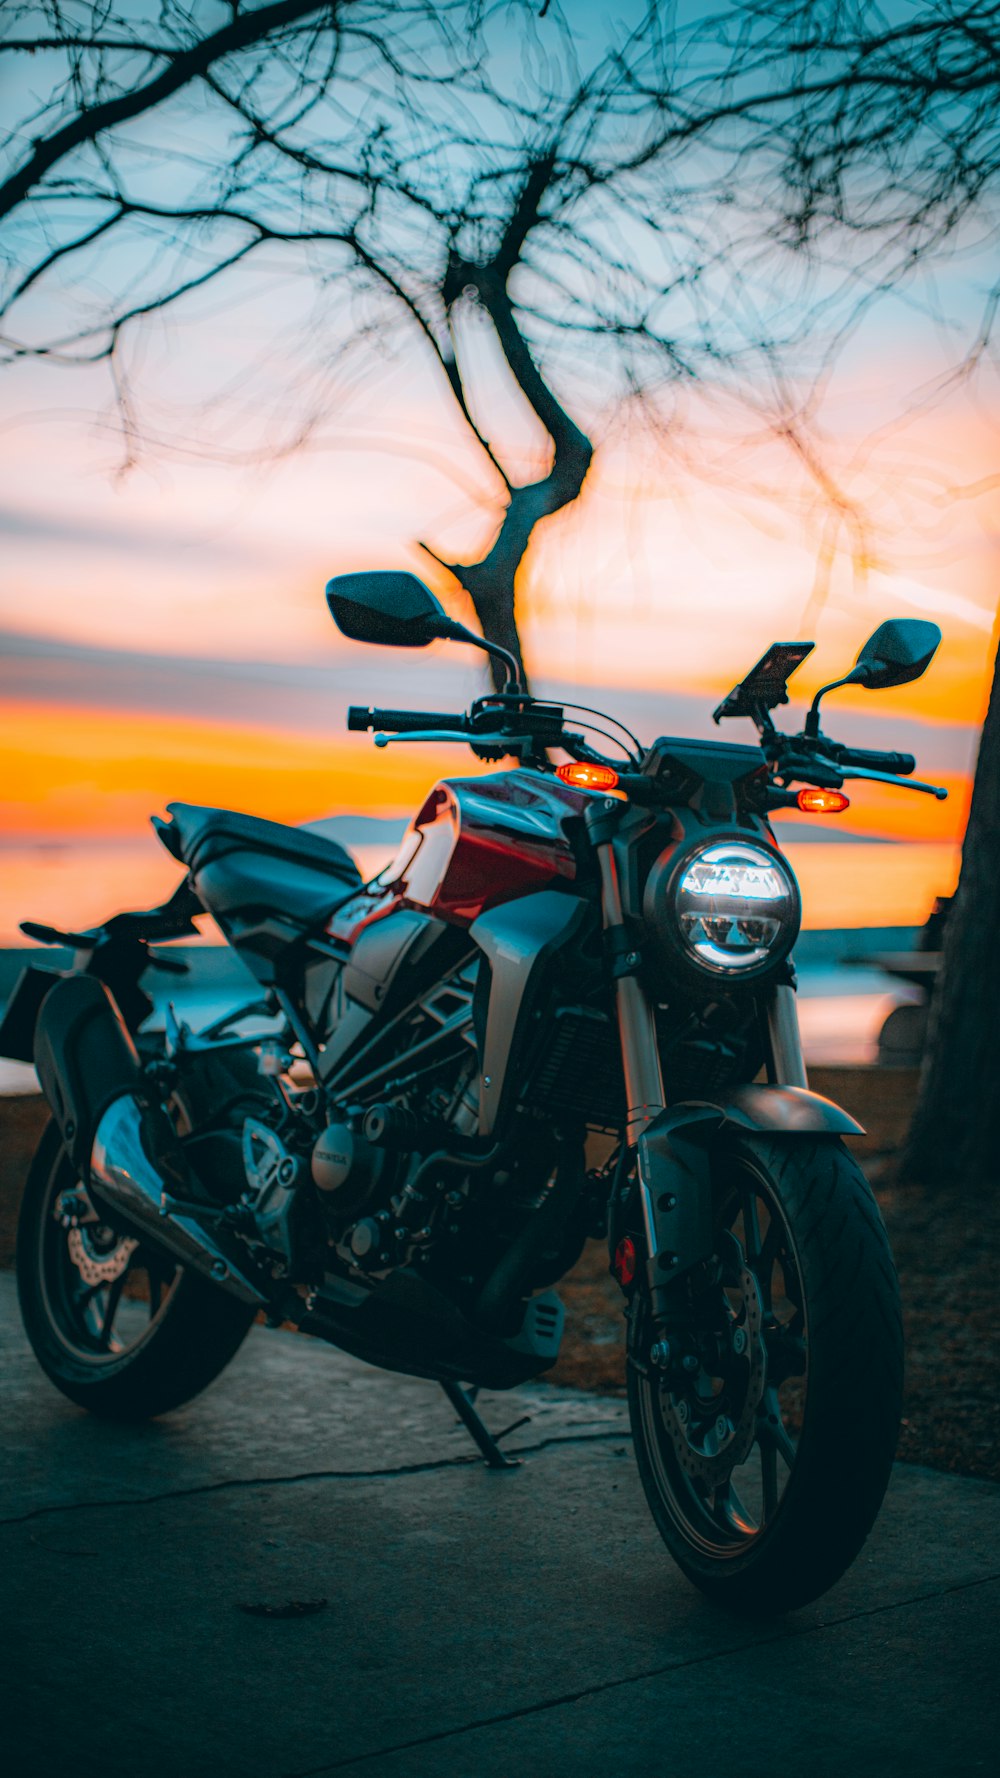 Motocicleta negra y gris durante la puesta de sol